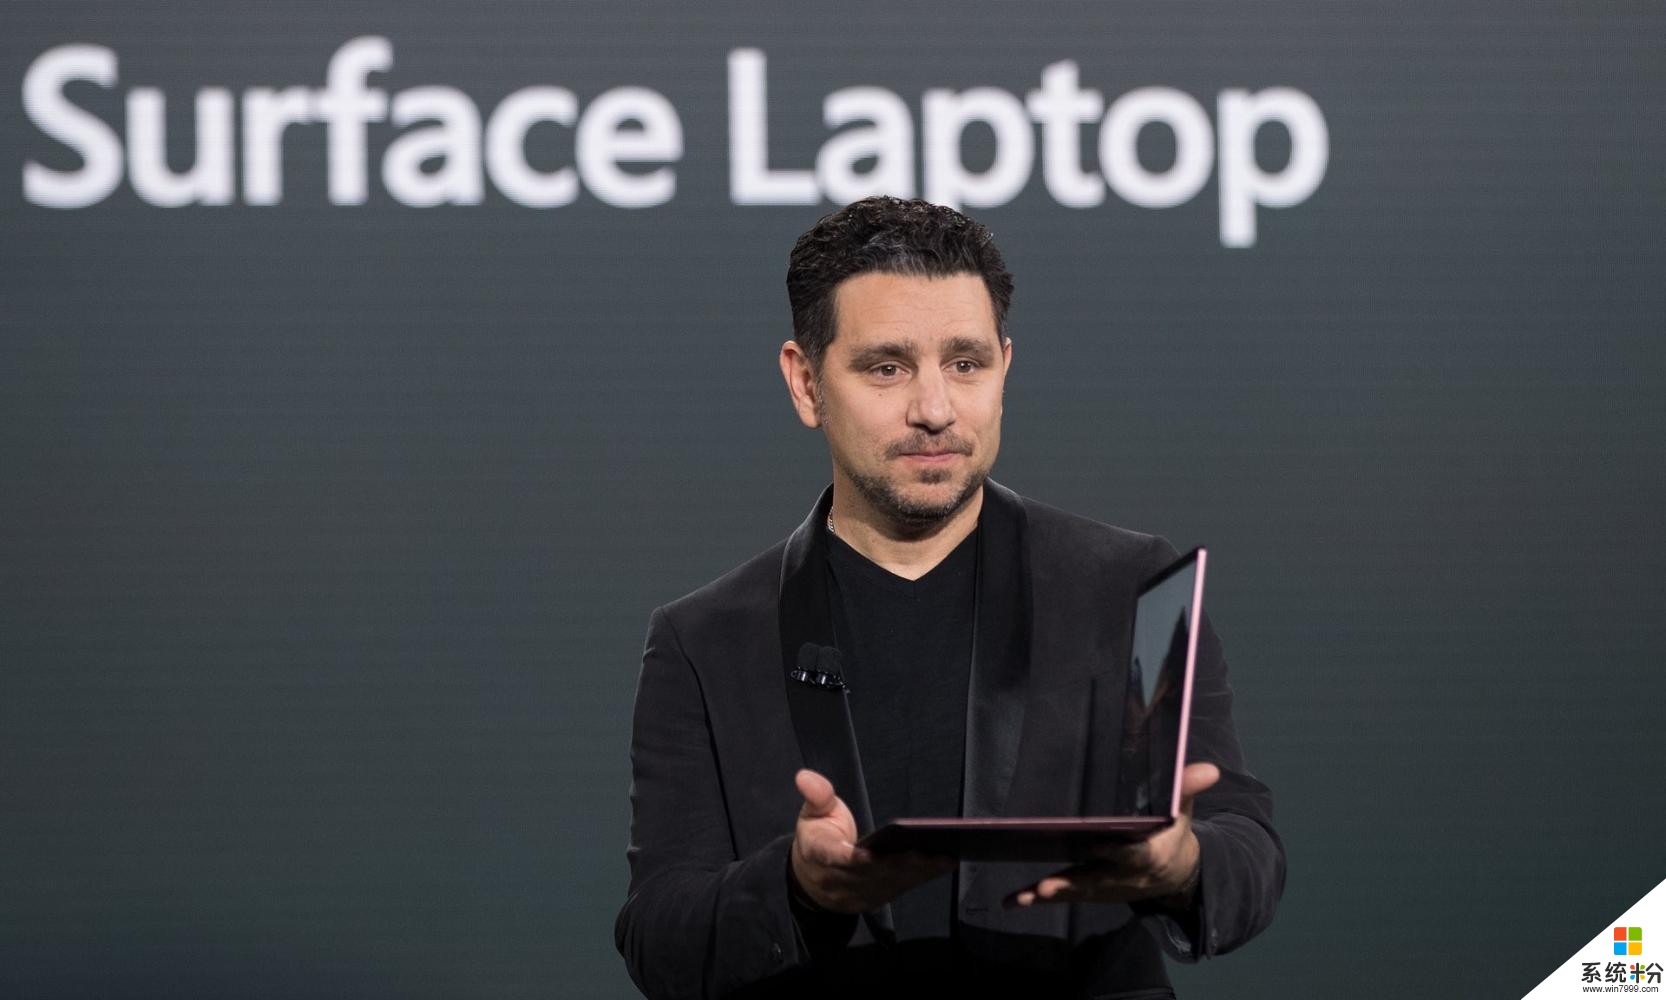 微軟推出Surface筆記本電腦和Windows 10 S, 以競爭MacBook Pro(2)